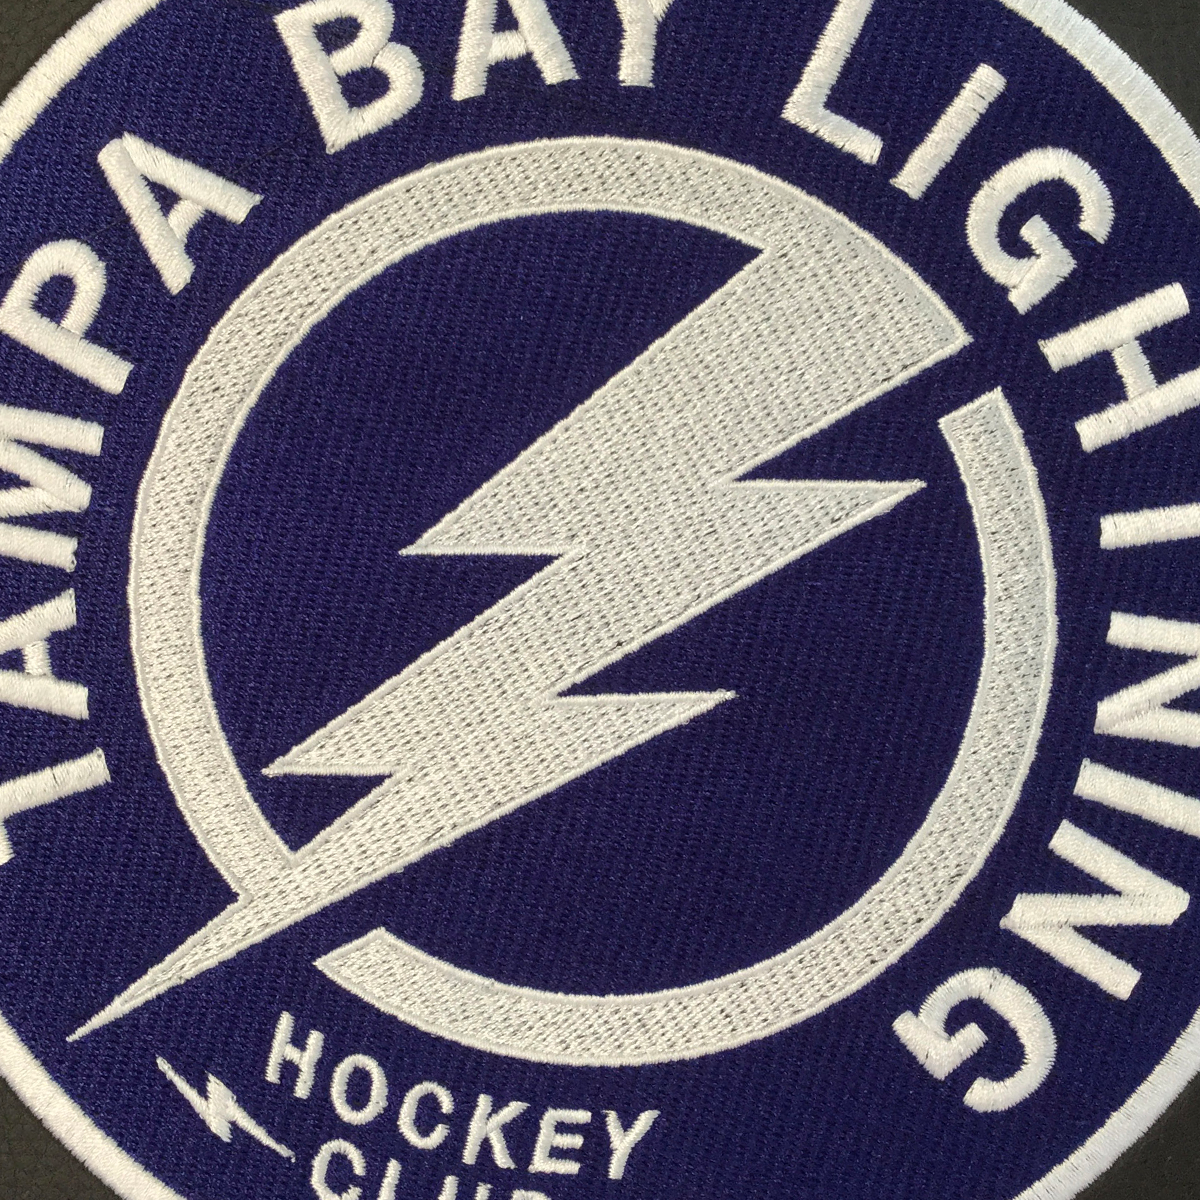 Rocker Recliner with Tampa Bay Lightning Alternate Logo